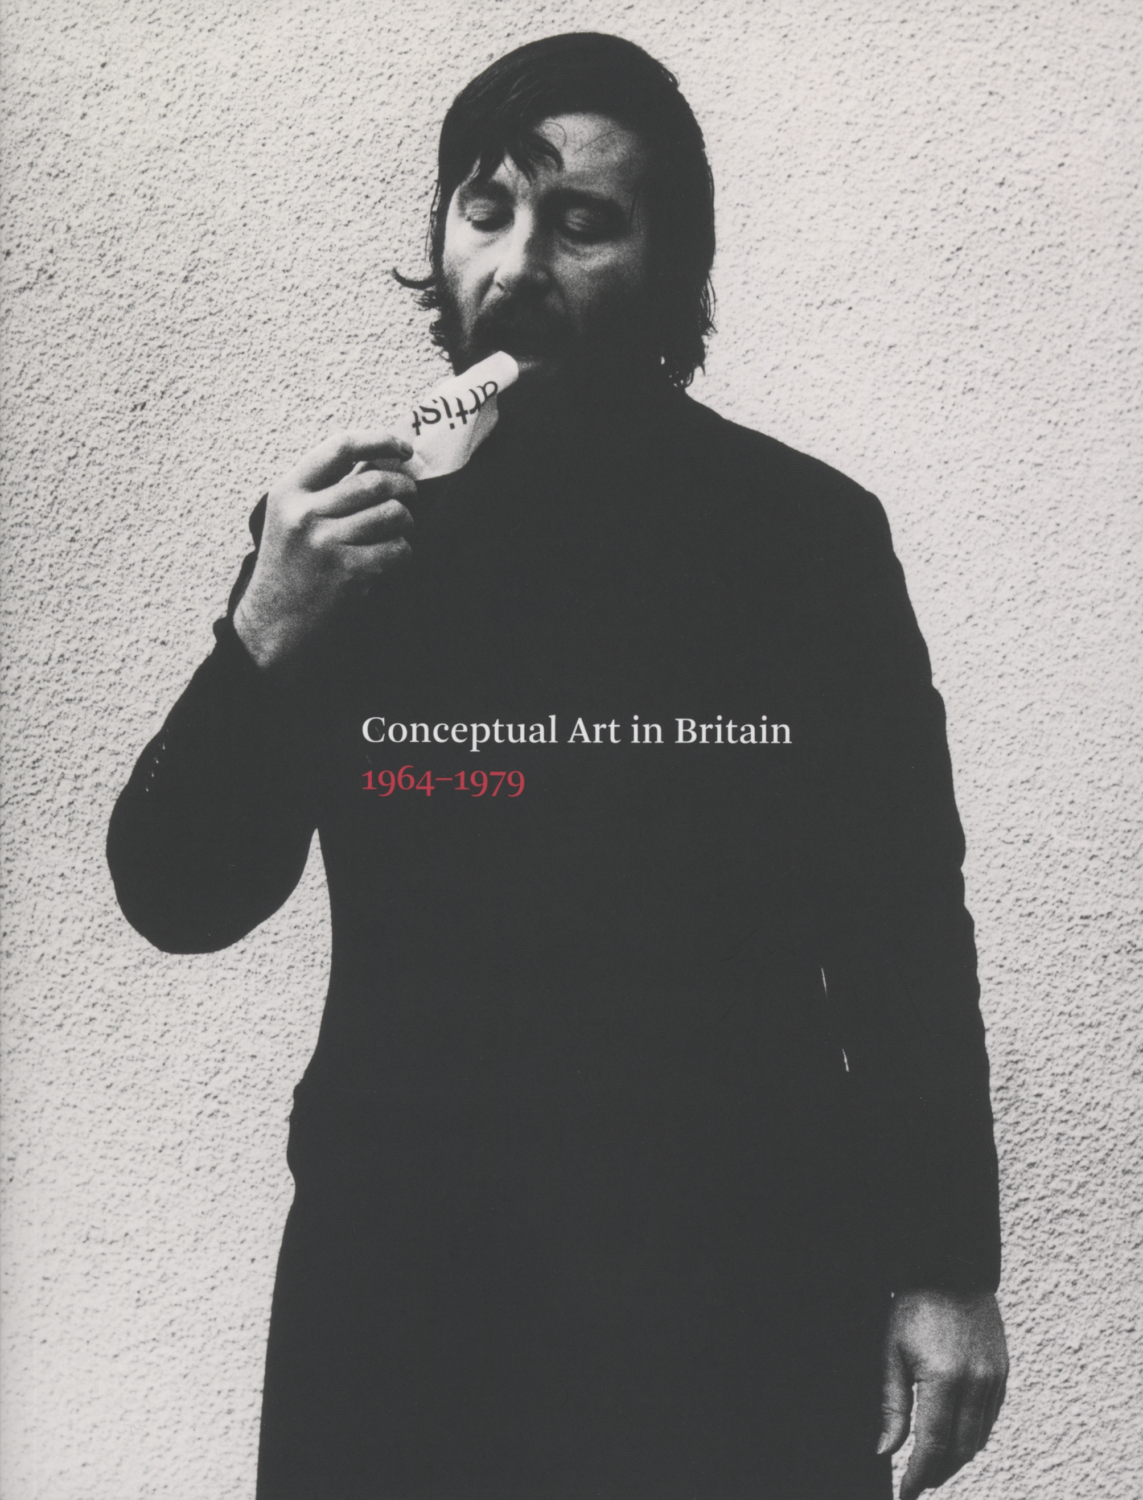 Conceptual Art in Britain: 1964-1979